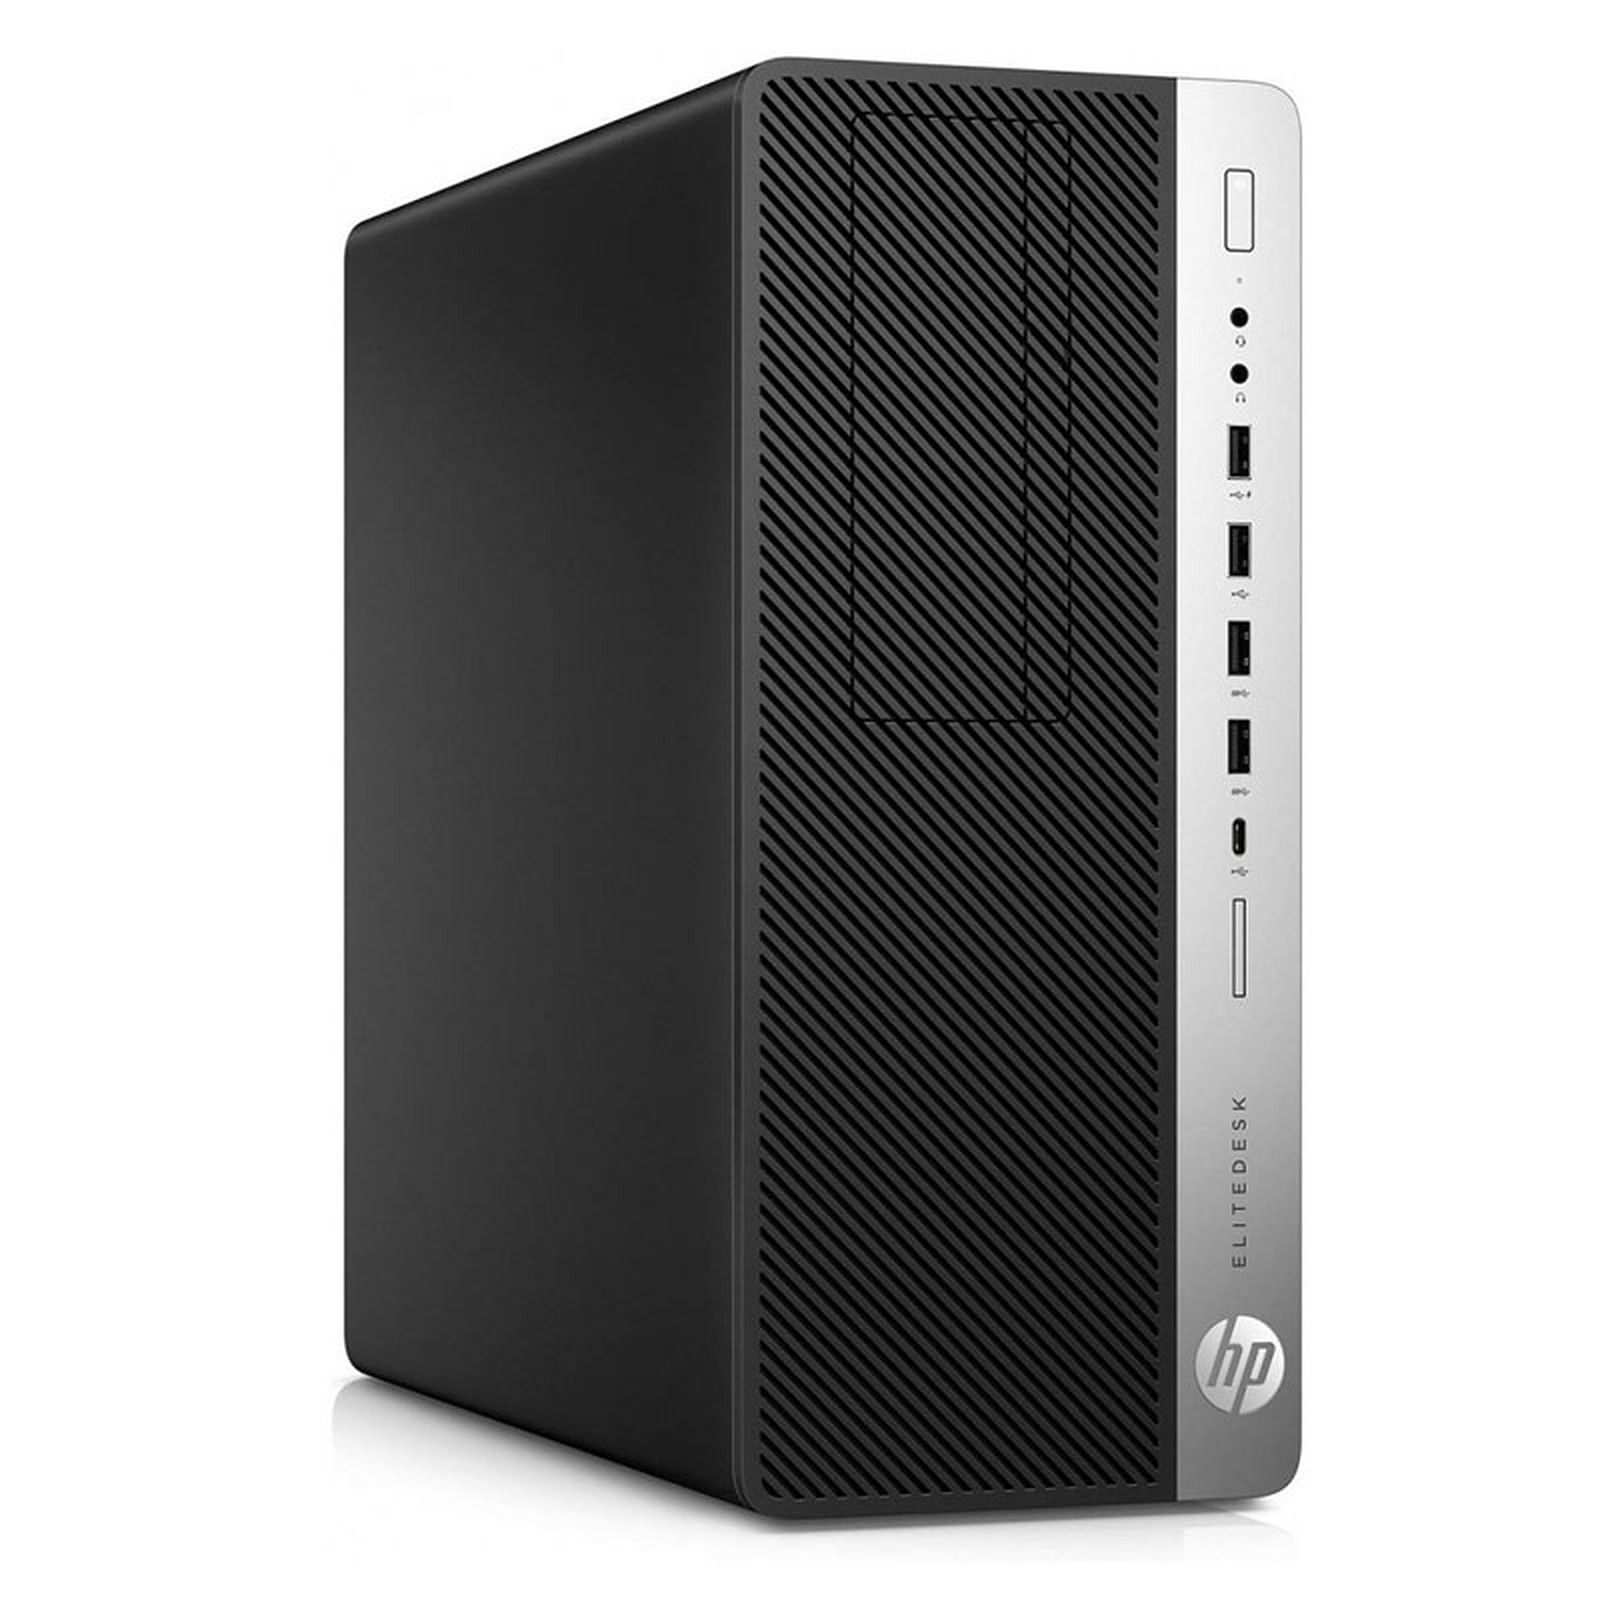 HP EliteDesk 800 G3 TWR (I565162) · Reconditionne - PC de bureau reconditionne HP